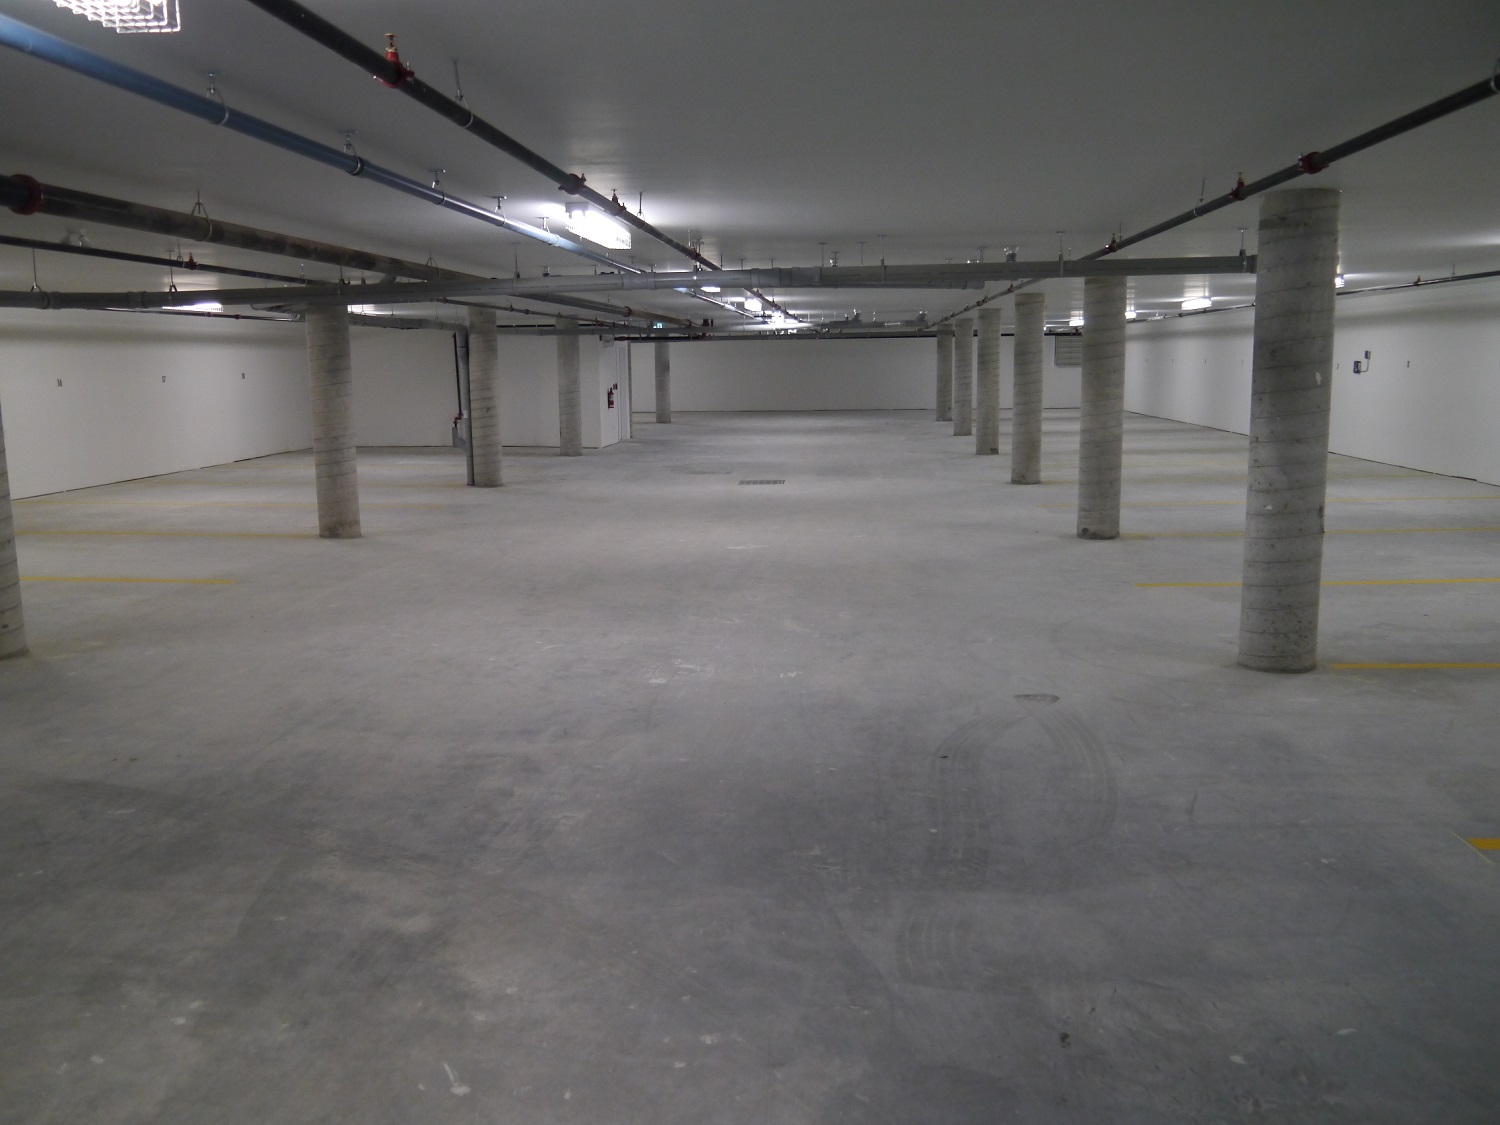 Underground parking